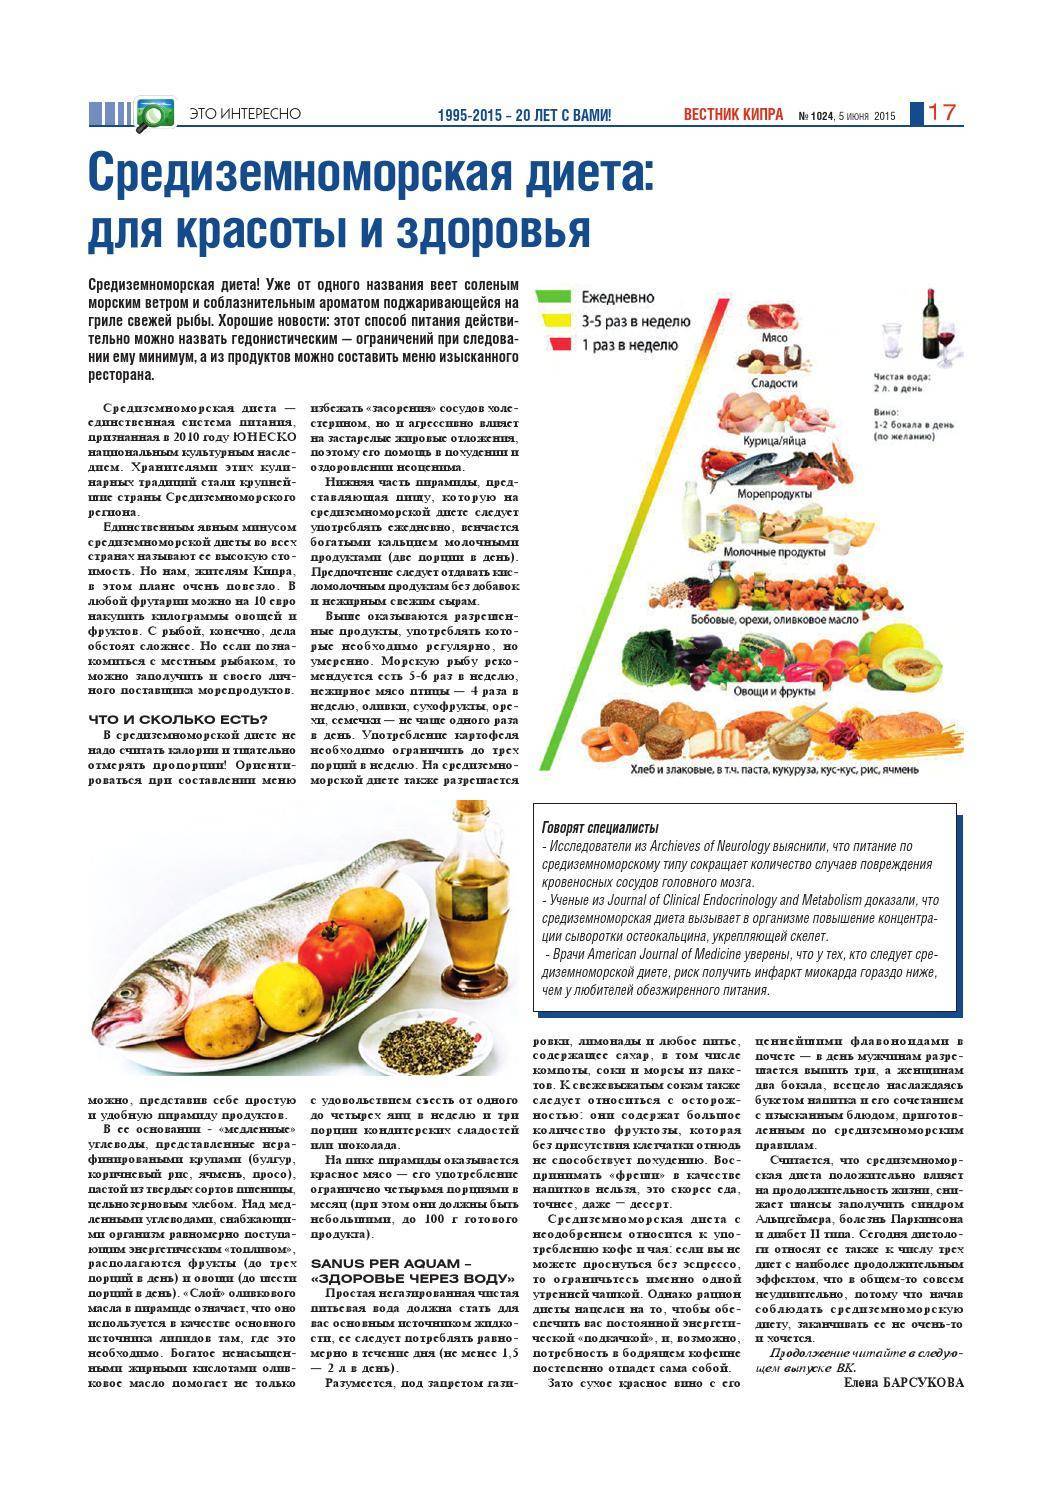 Средиземноморская диета: правила, меню, объем порций, продолжительность, разрешенные и запрещенные продукты.